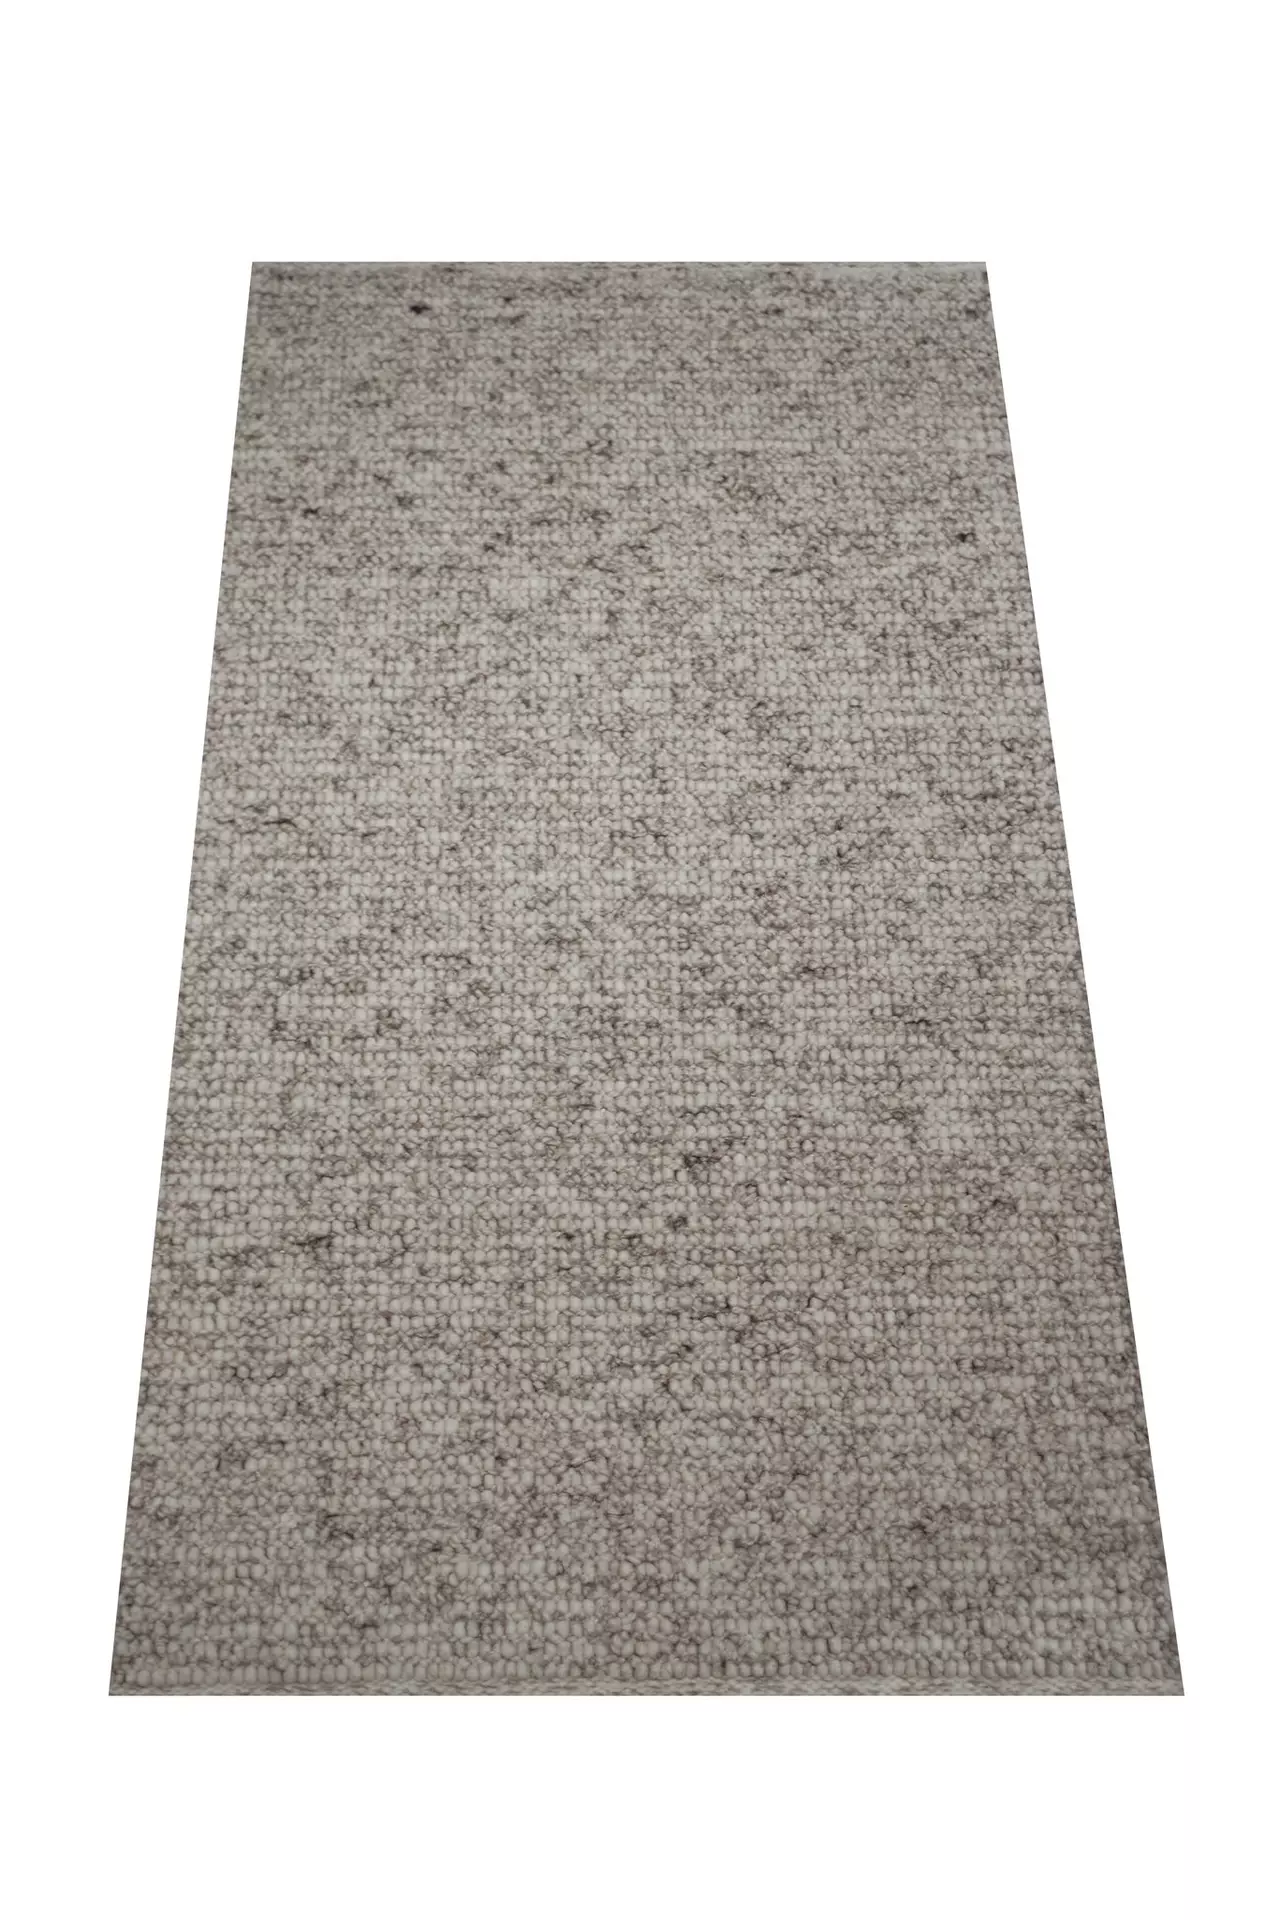 Handwebteppich Weitblick Polaris Allgäuer Teppichmanufaktur Textil 90 x 160 cm